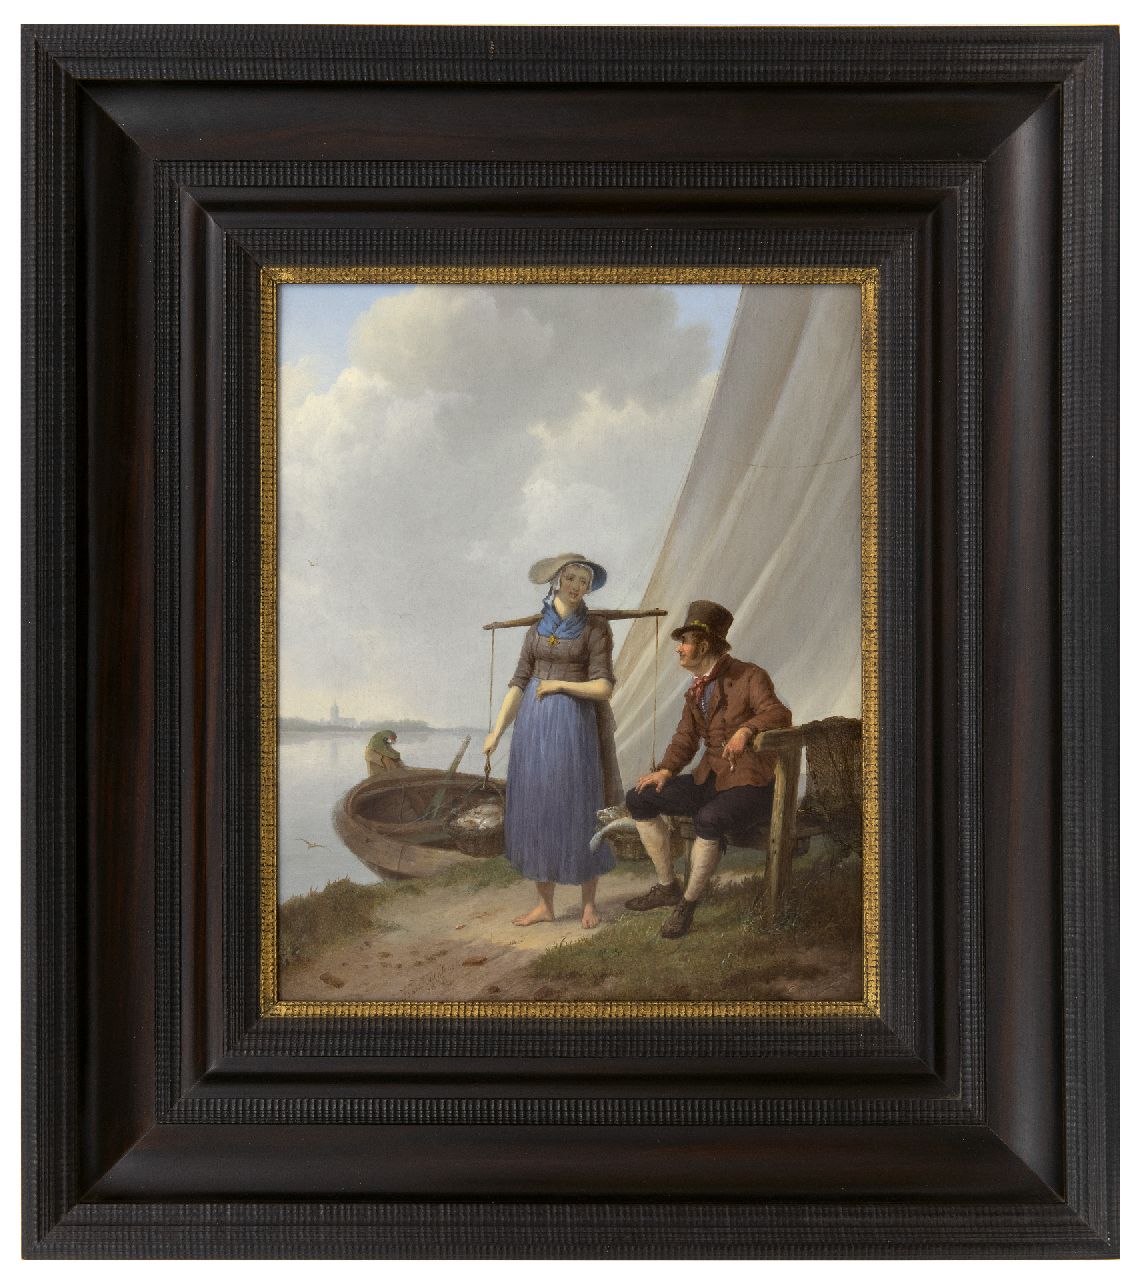 Koekkoek J.H.  | Johannes Hermanus Koekkoek | Schilderijen te koop aangeboden | Een praatje langs de oever (tezamen met 10274), olieverf op paneel 33,1 x 26,9 cm, gesigneerd links van het midden. en gedateerd 1834